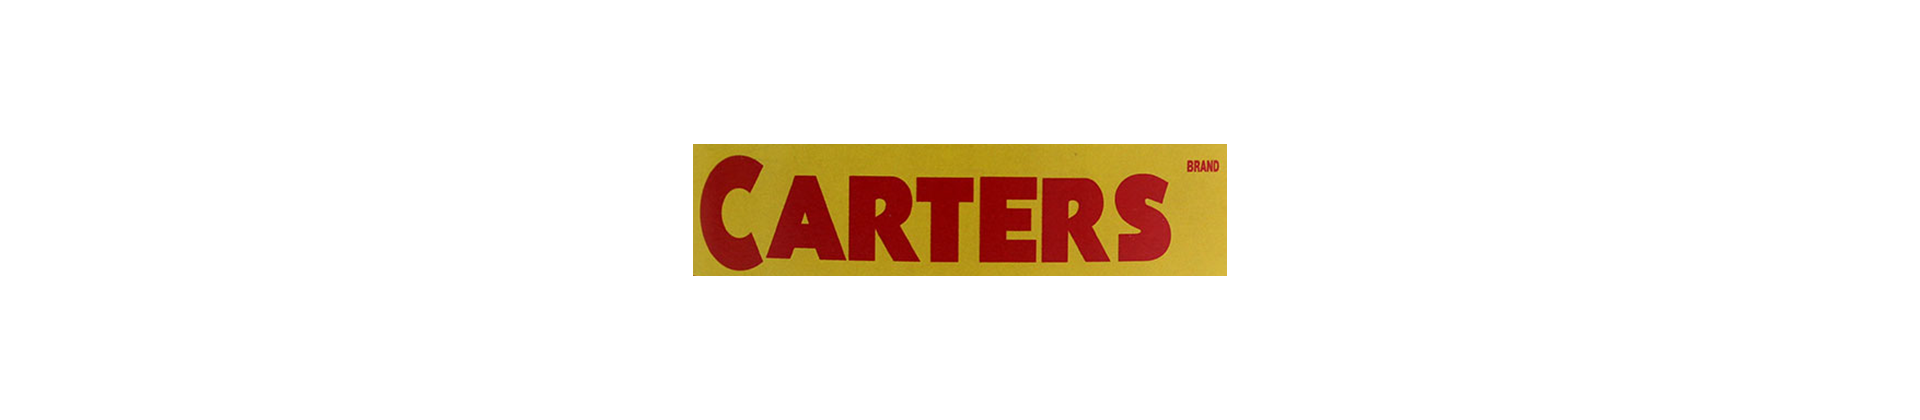 Categories - Carter brands